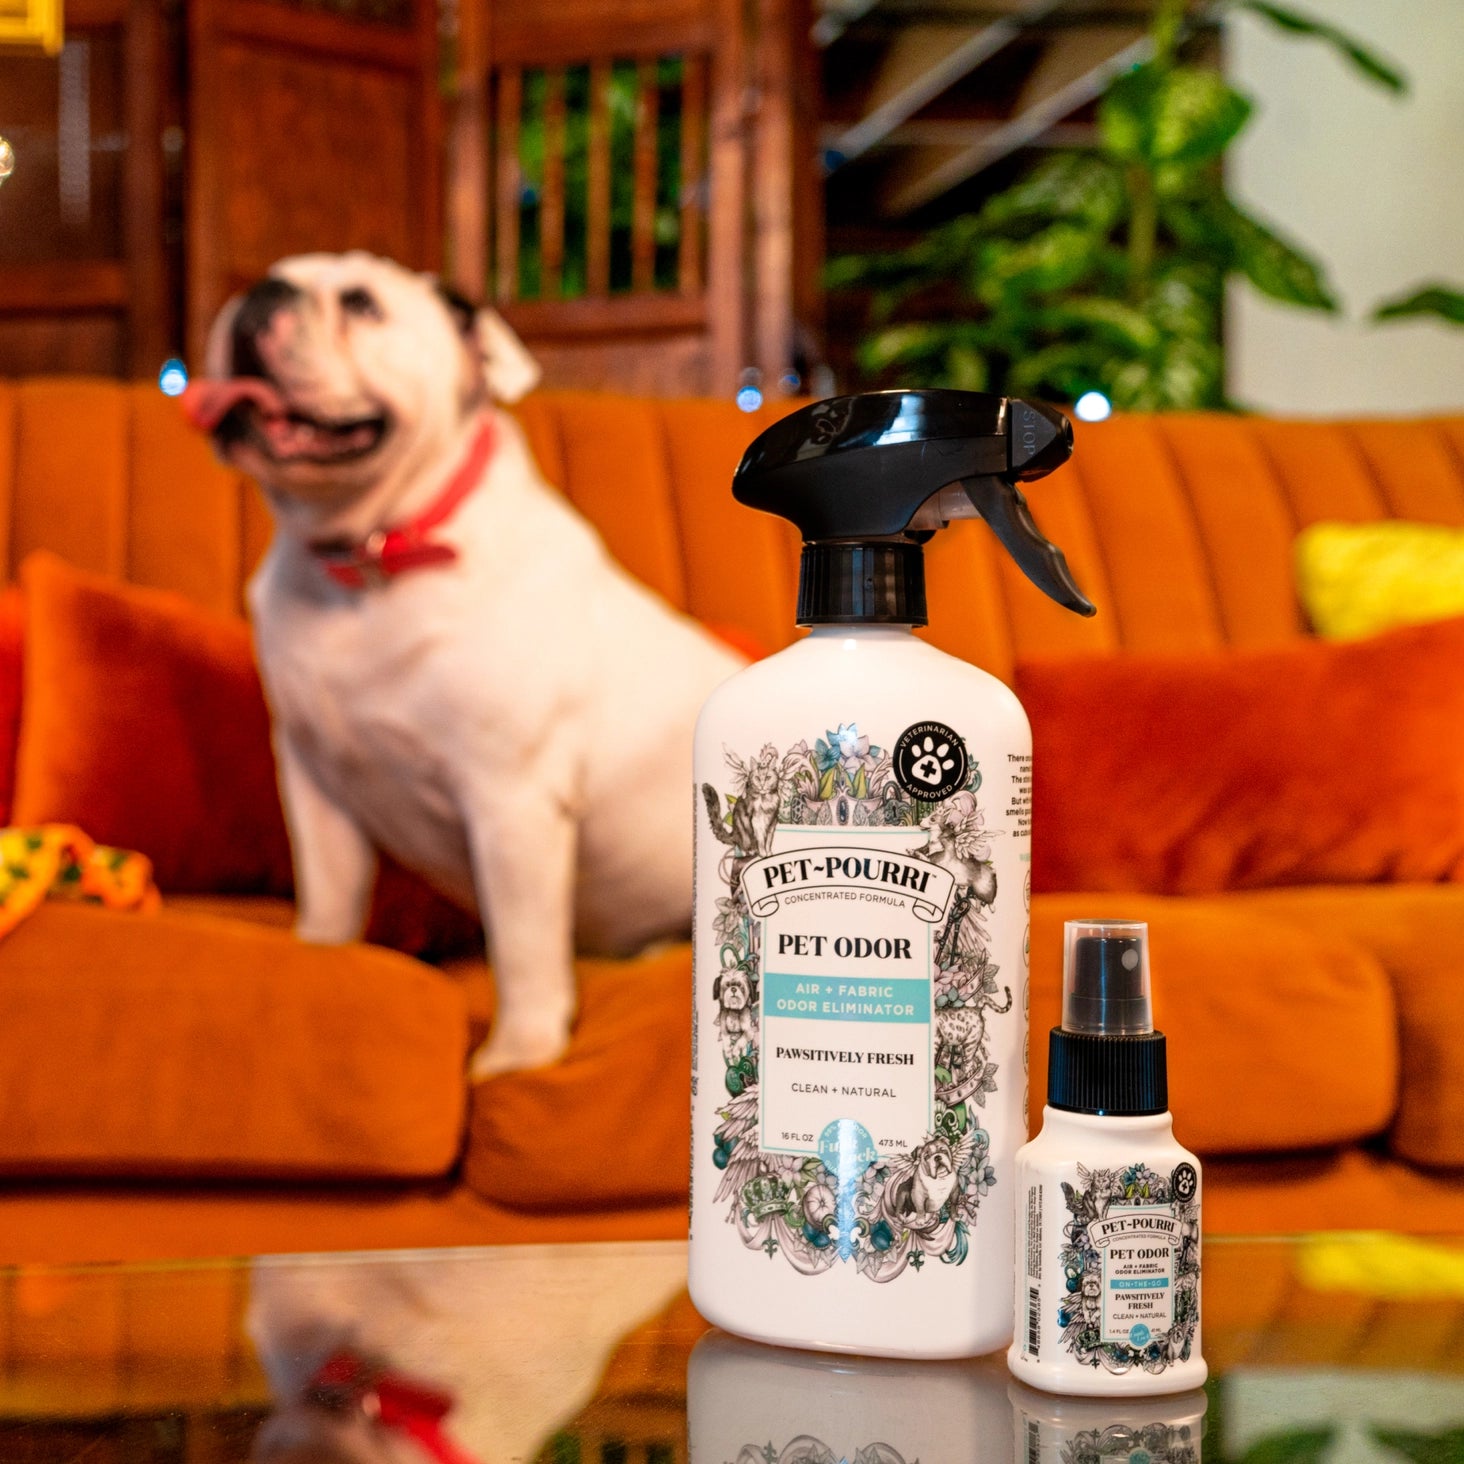 Pawsitively Fresh Pet Odor Eliminator Spray Mini by Poo-Pourri